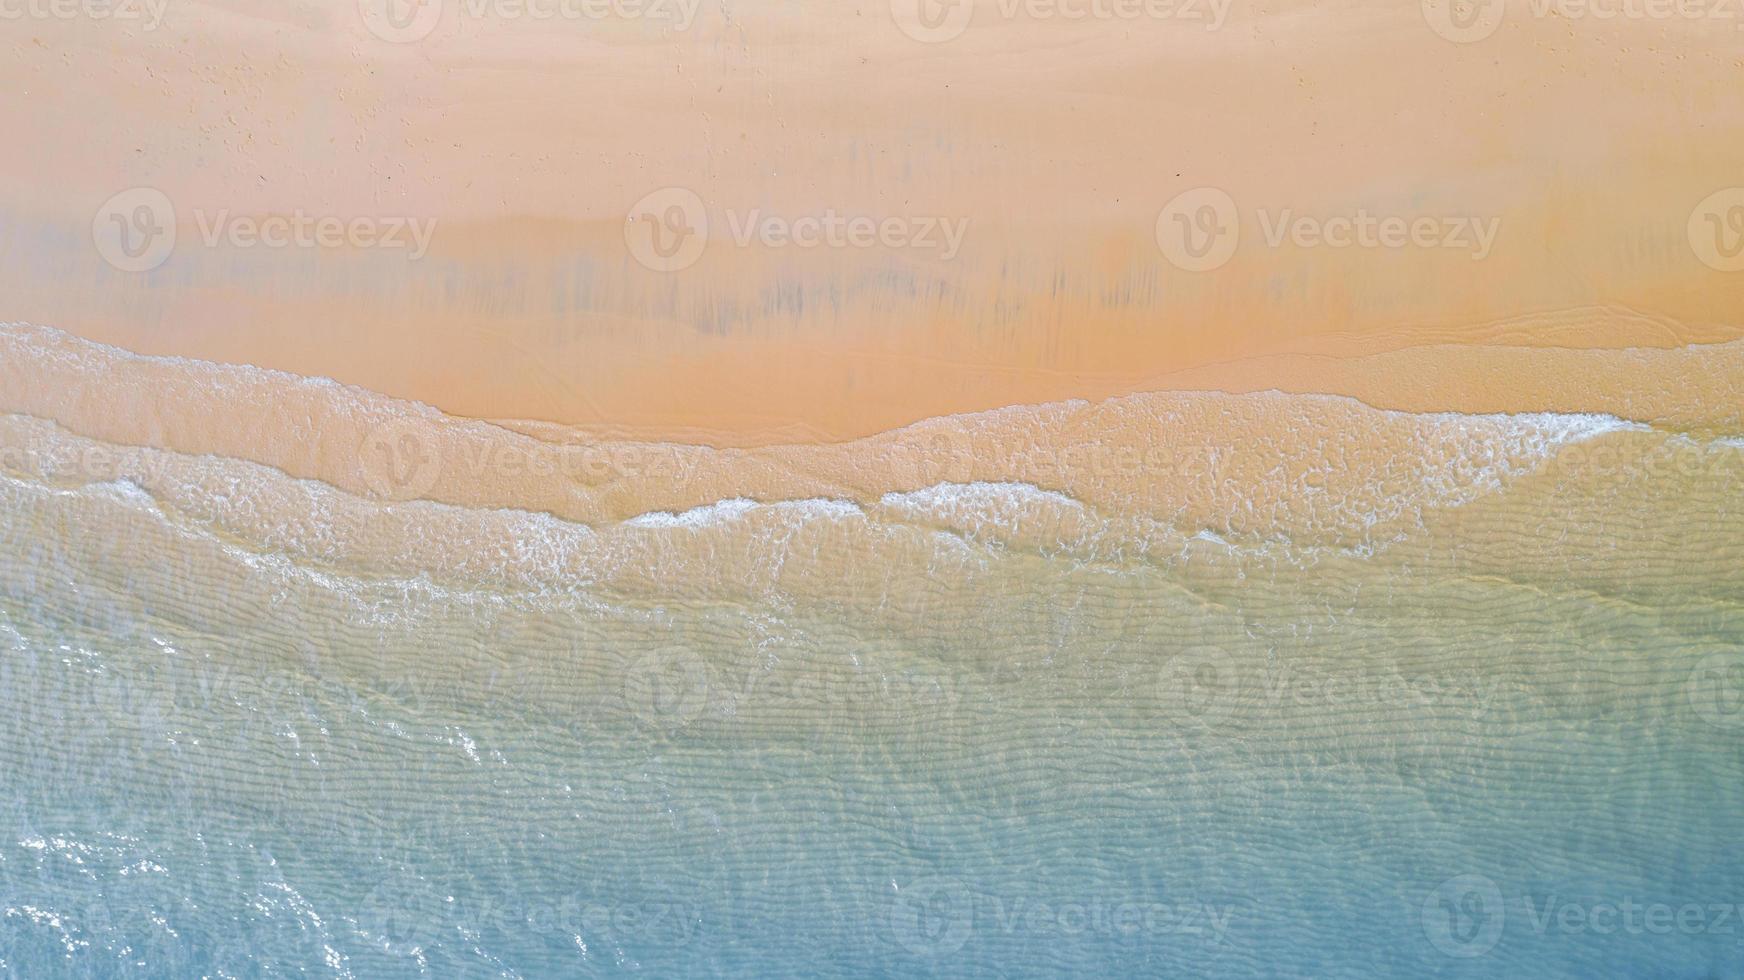 vue aérienne de la plage à l'ombre de l'eau bleu émeraude et de la mousse des vagues sur la mer tropicale photo